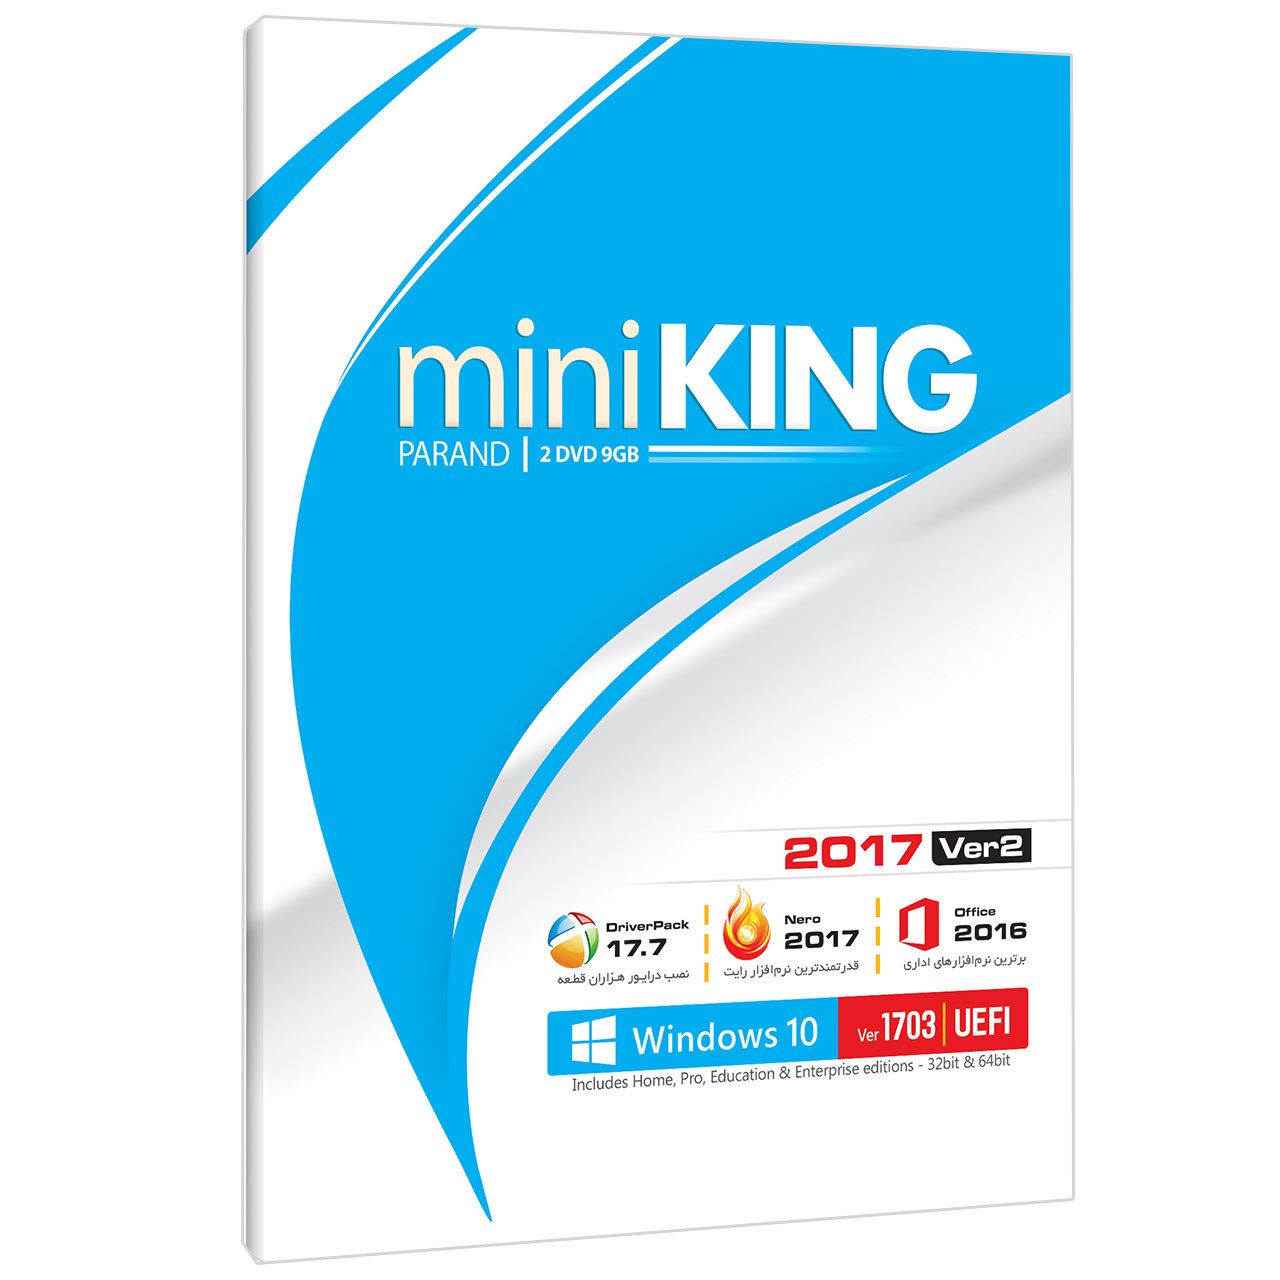 مجموعه نرم افزاری miniKing شرکت پرند نسخه 2